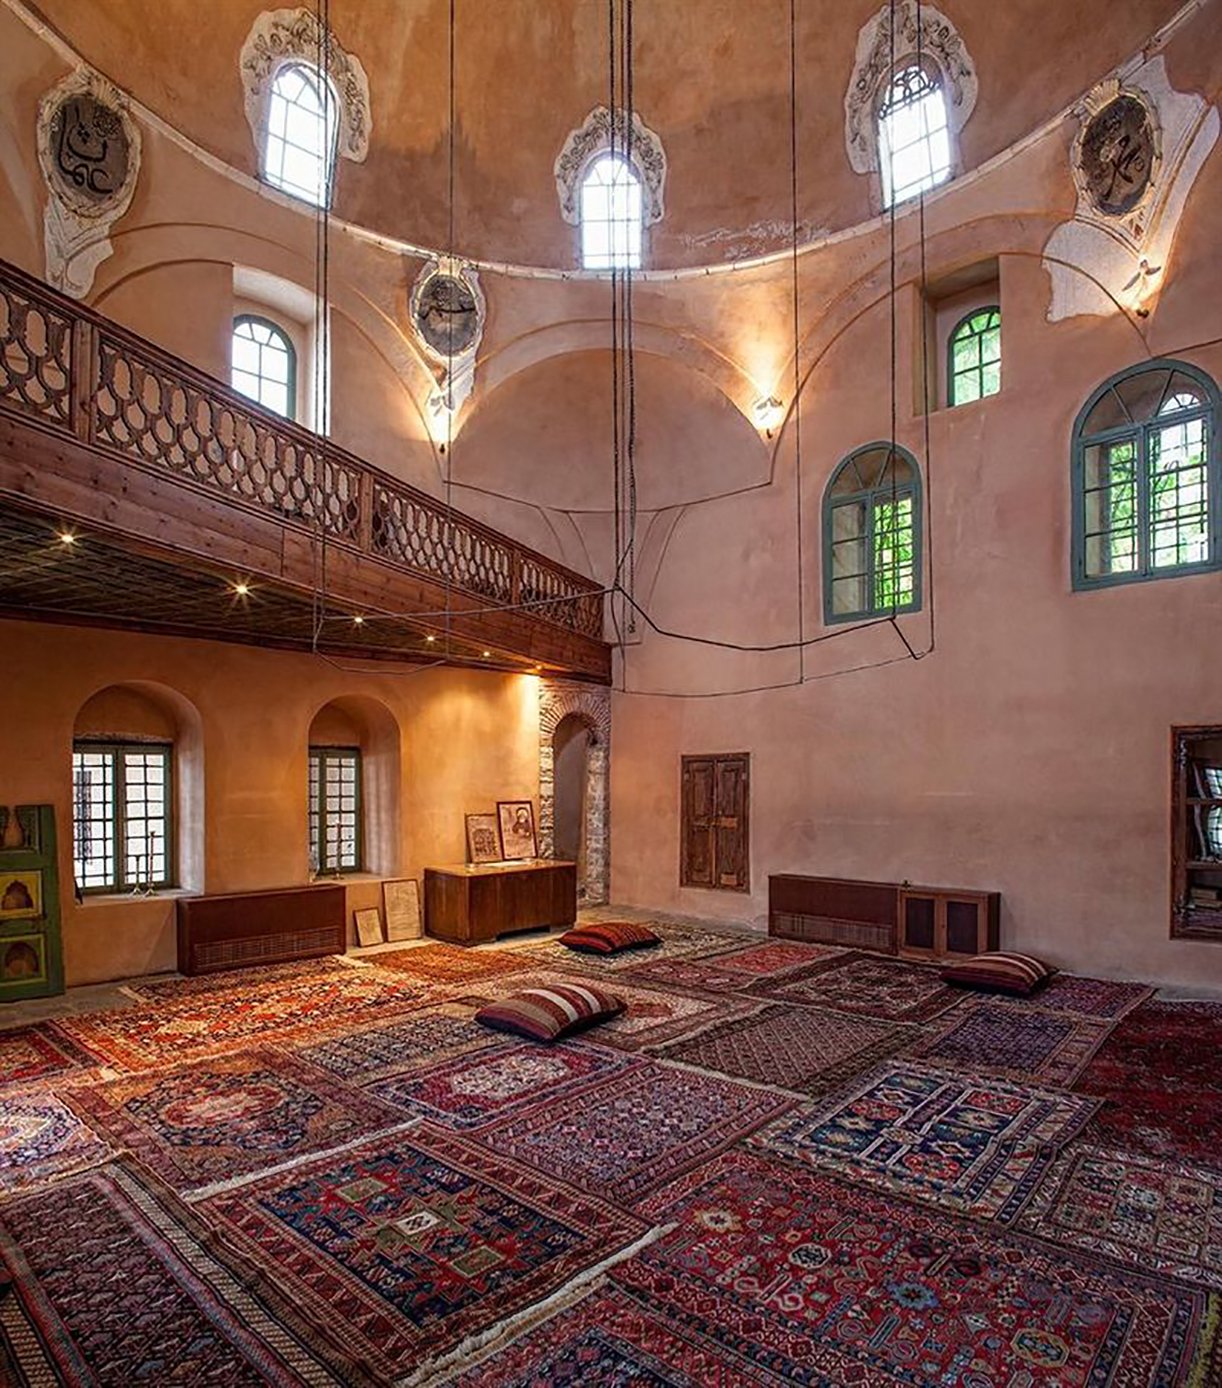 Imaret's mosque